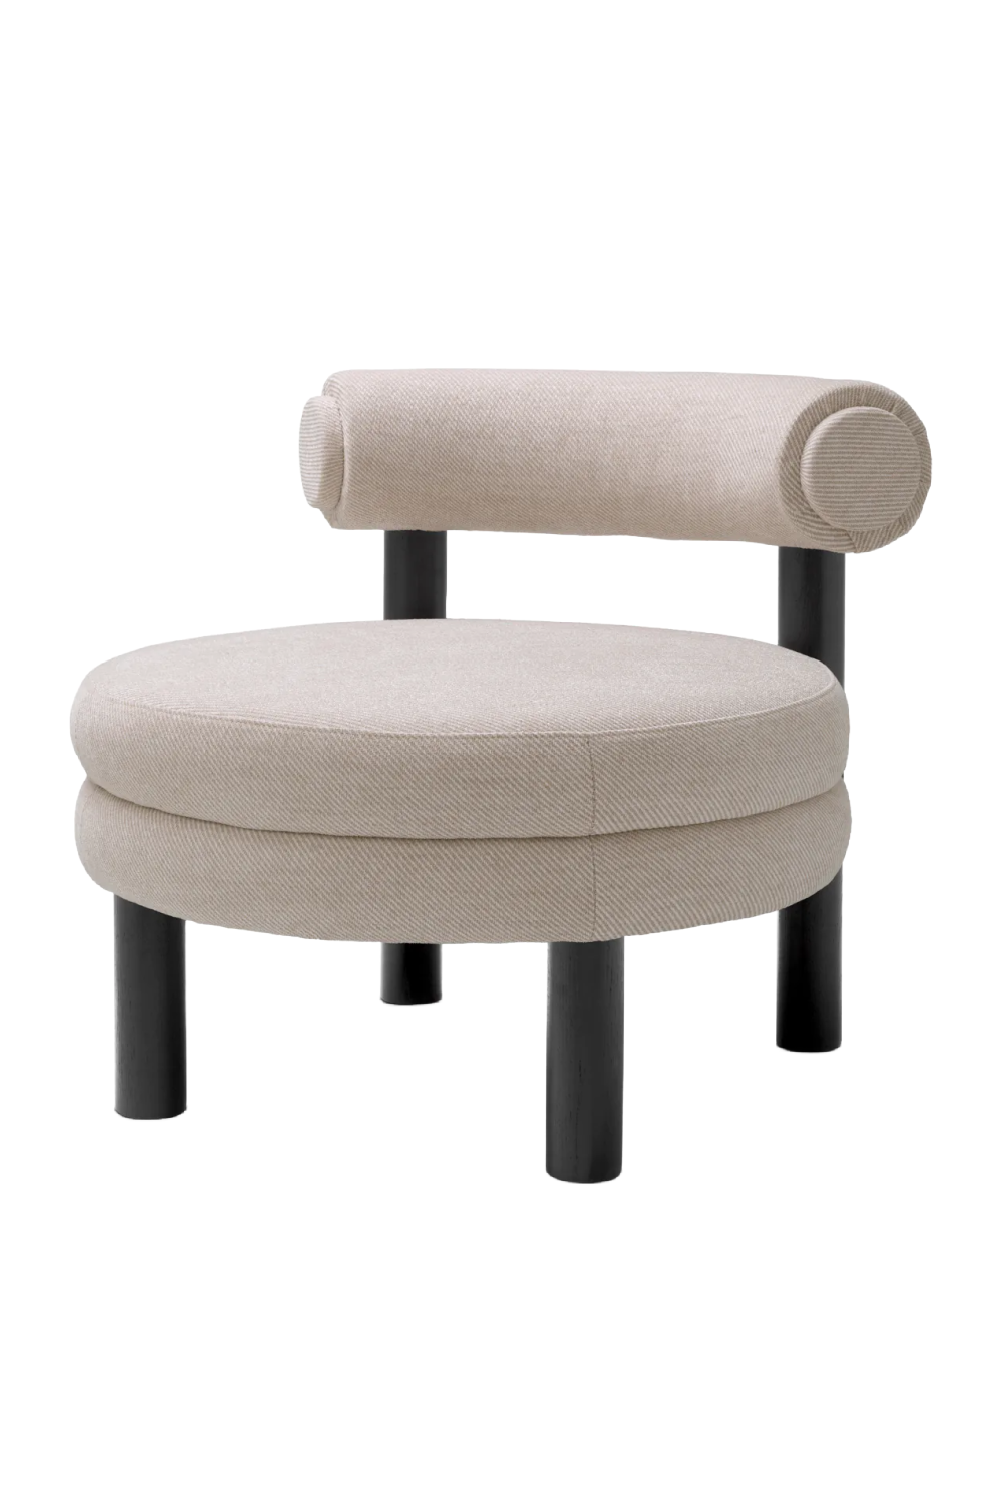 Cream Modern Lounge Chair | Eichholtz Zoey | Oroa.com